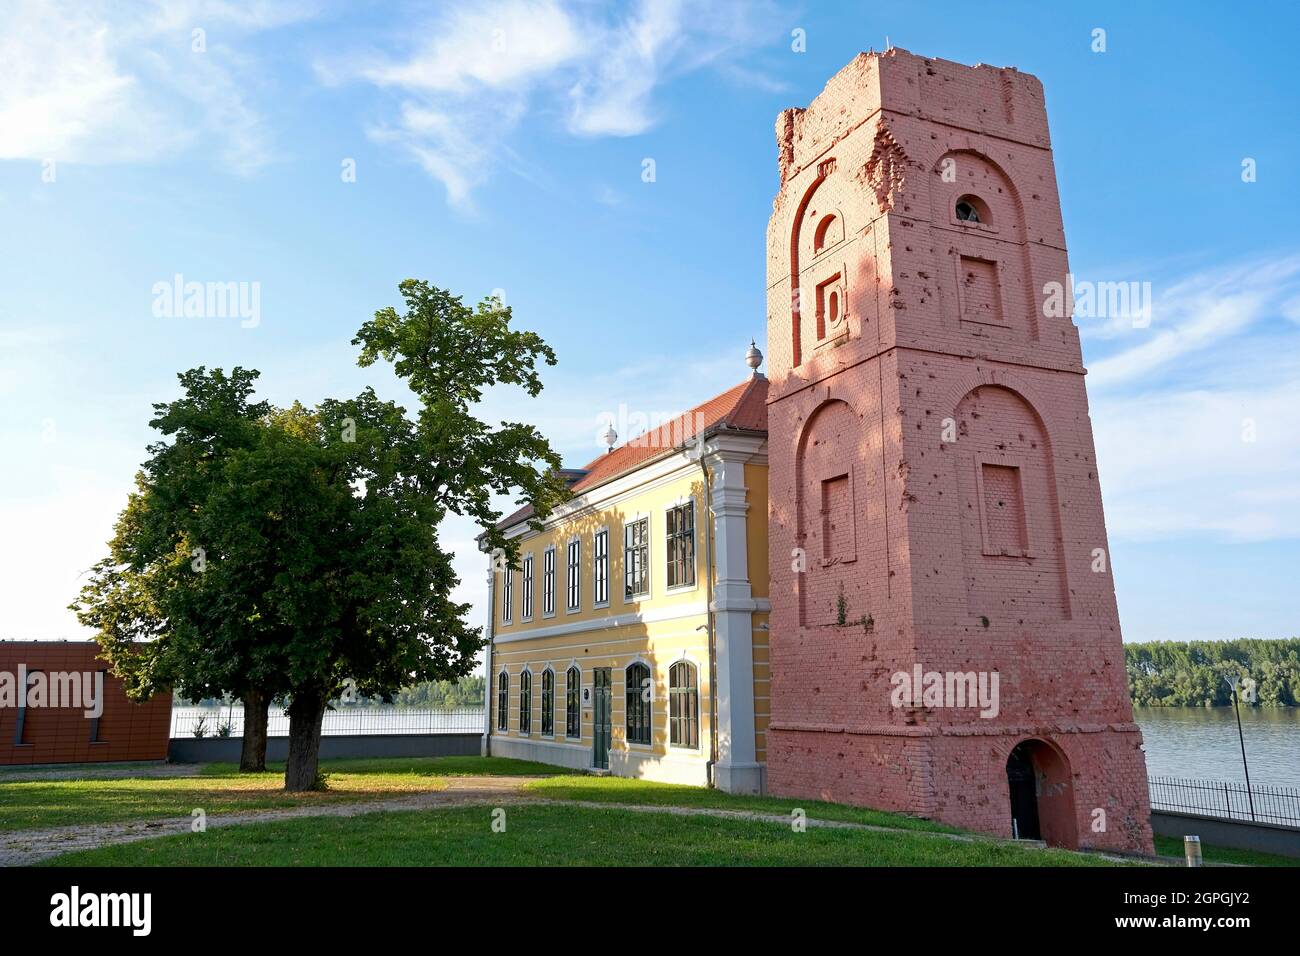 Kroatien, Slawonien, Vukovar, Schloss Eltz, Barockpalast aus dem 18. Jahrhundert, in dem sich das städtische Museum von Vukovar befindet, das nach dem Kroatienkrieg zerstört und 2011 restauriert wurde, haben einige Teile noch die Narben der Zusammenstöße Stockfoto